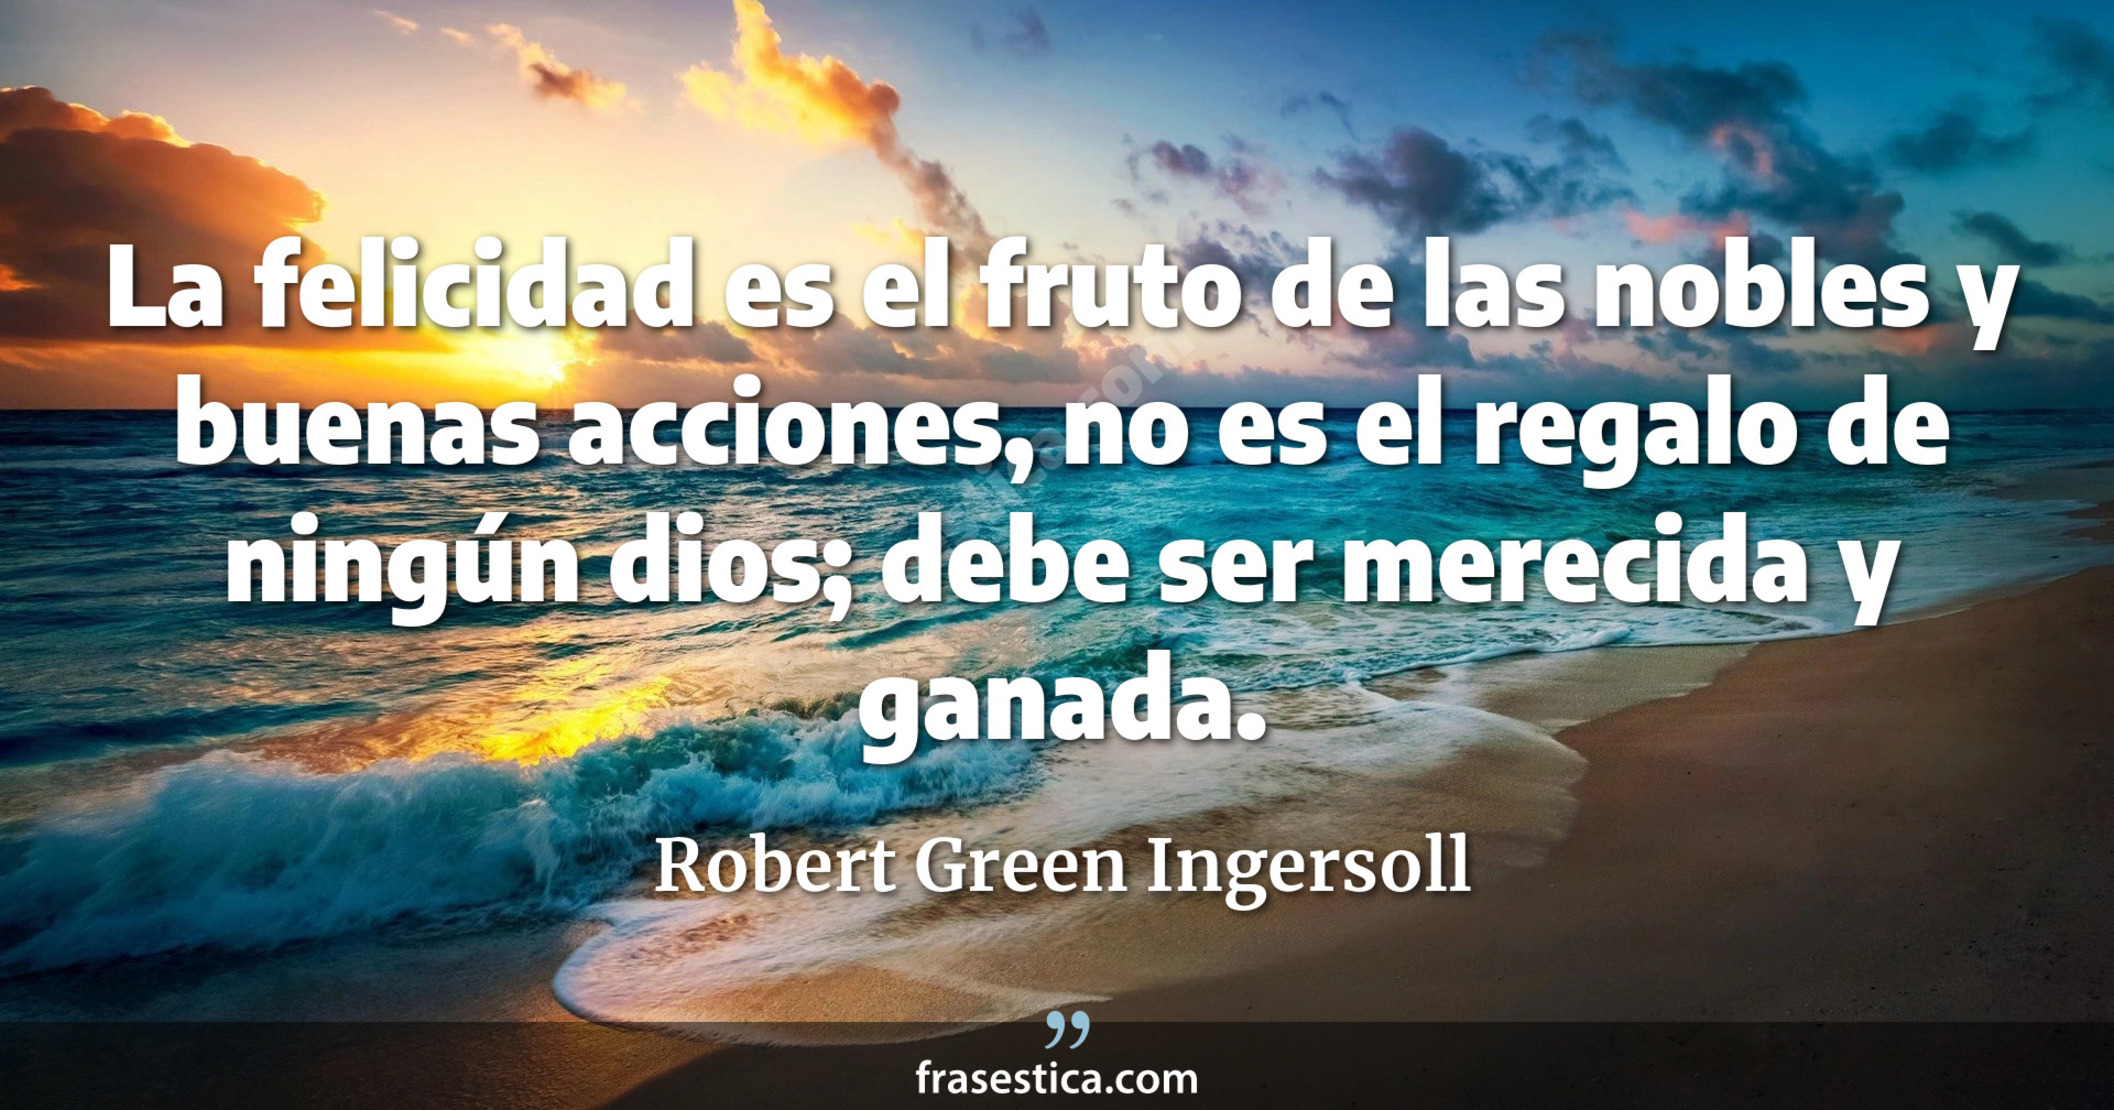 La felicidad es el fruto de las nobles y buenas acciones, no es el regalo de ningún dios; debe ser merecida y ganada. - Robert Green Ingersoll